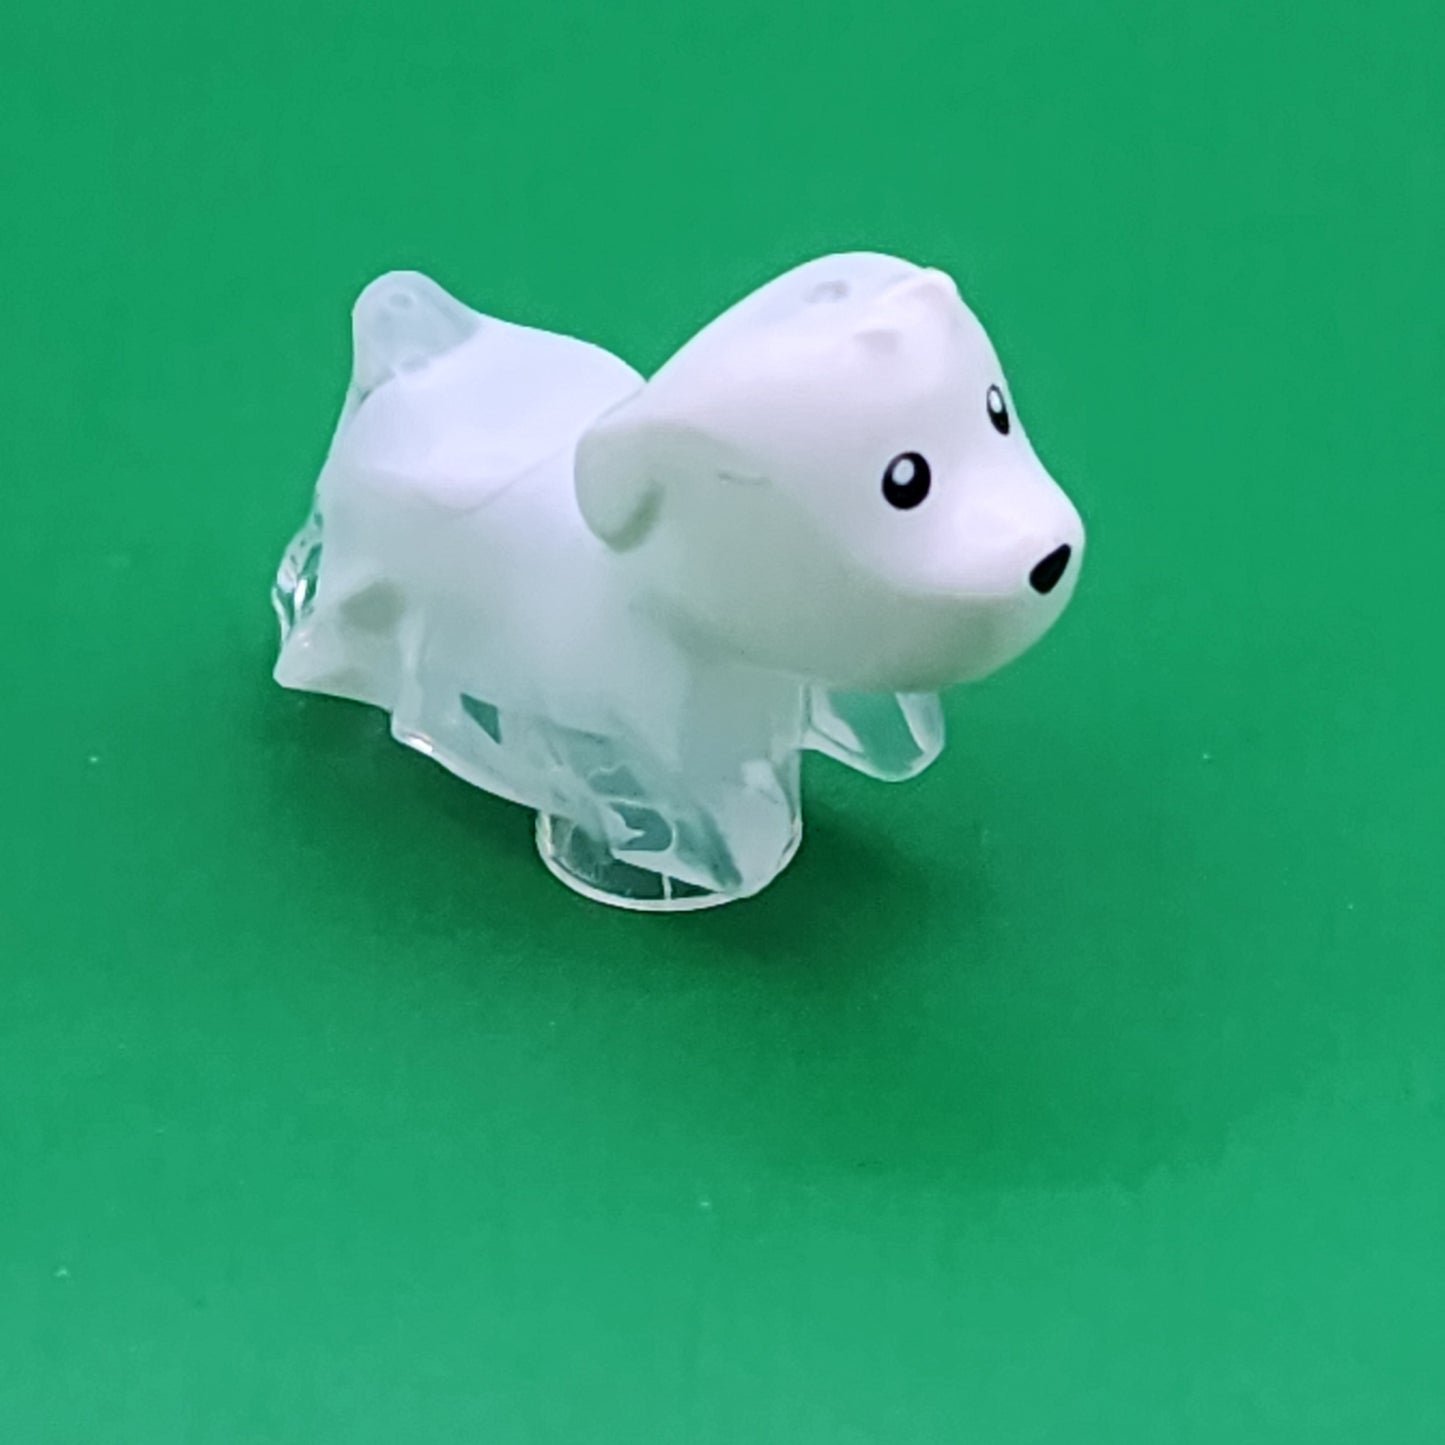 Lego Animals You Choose Dog Cat Elephant Horse Bunny Pet